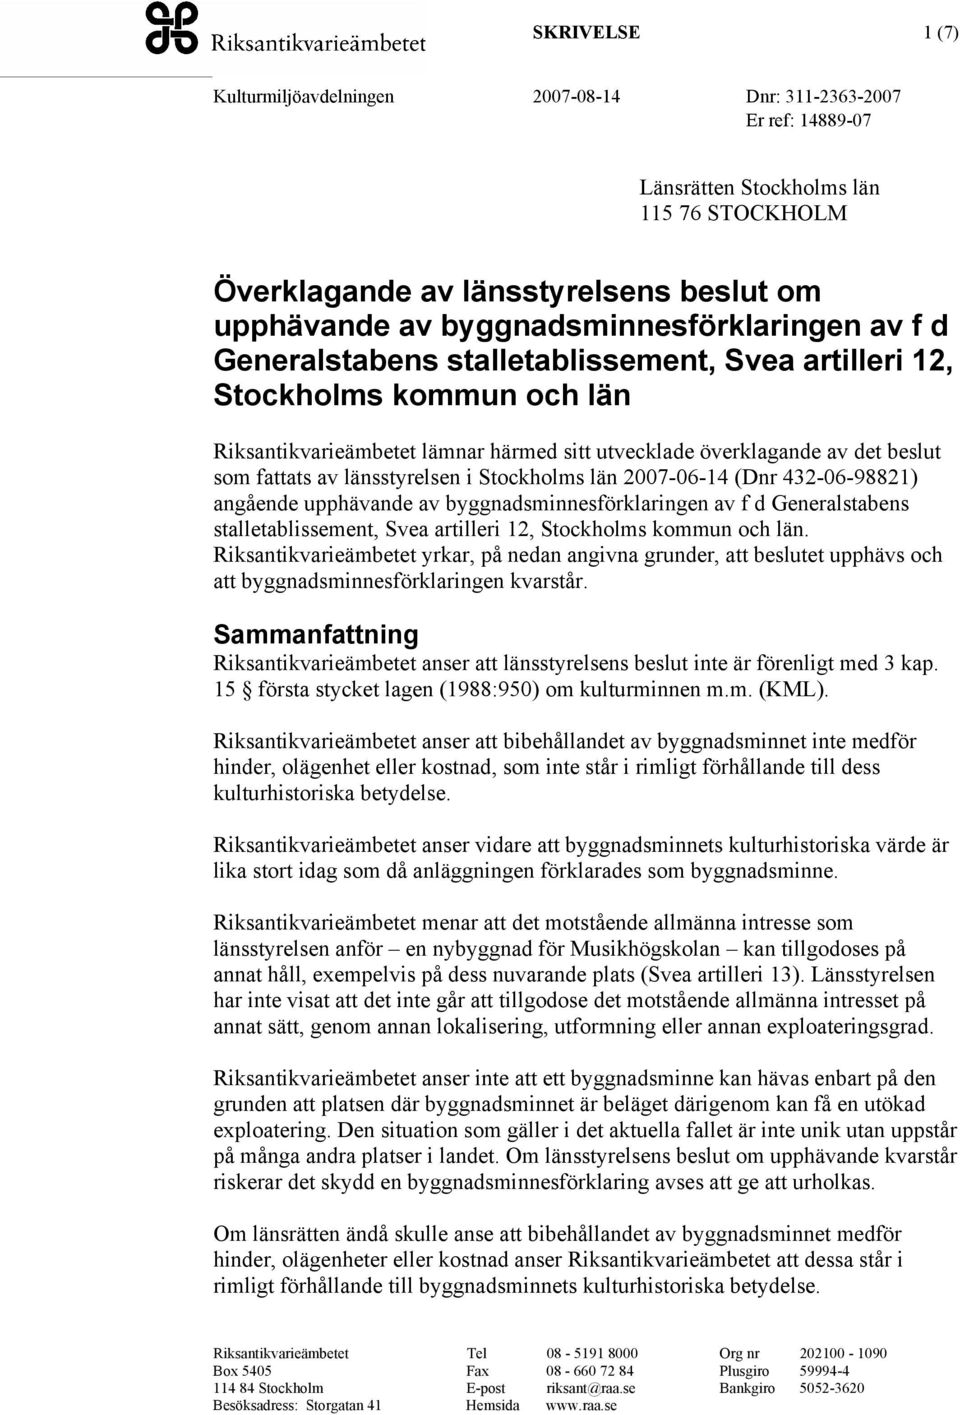 angående upphävande av byggnadsminnesförklaringen av f d Generalstabens stalletablissement, Svea artilleri 12, Stockholms kommun och län.